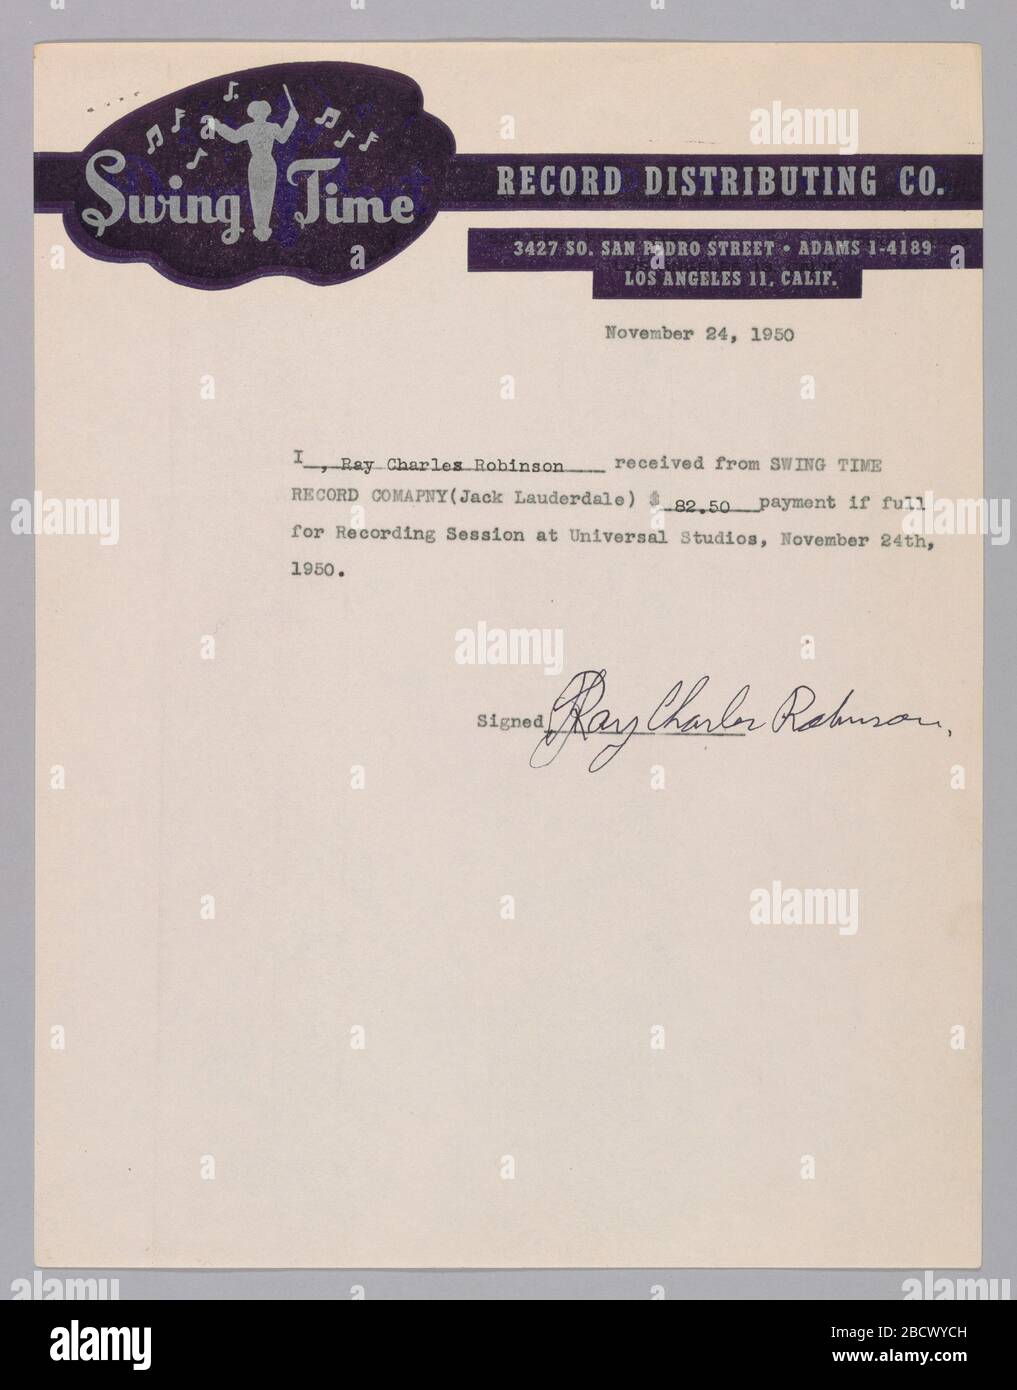 Zahlungseingang für eine von Ray Charles unterschriebene Aufnahmesitzung. Zahlungseingang von Ray Charles, Sänger zu Beginn seiner Karriere, als er erst 20 Jahre alt war, unterzeichnet. Die Quittung besagt, dass Ray Charles Robinson von der Swing Time Record Company eine Zahlung von 82,50 Dollar für eine Aufnahmesitzung in den Universal Studios am 24. November 1950 erhalten hat. 2011.57.40.1 Stockfoto